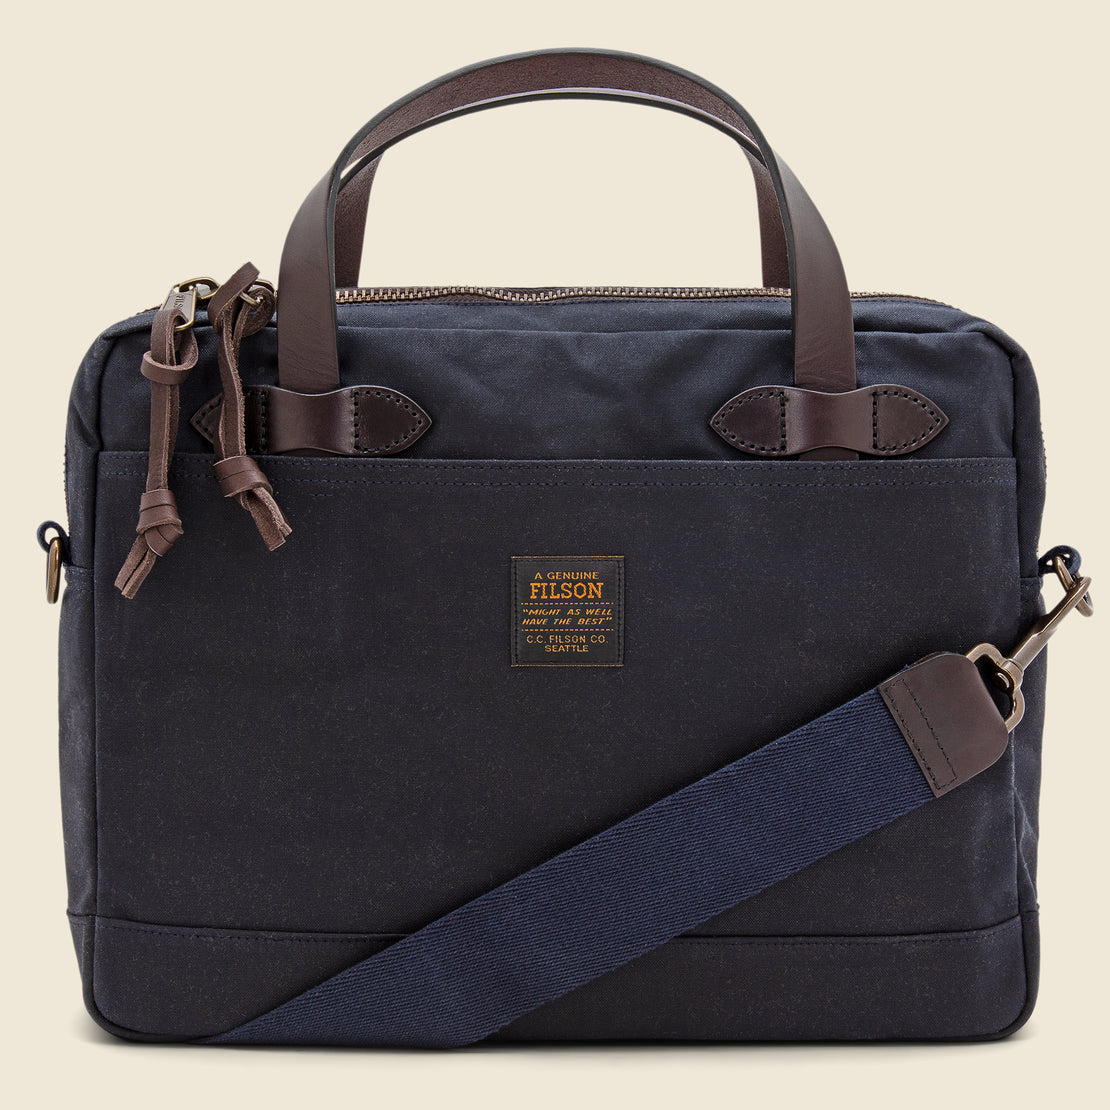 Filson Tin Cloth Compact Briefcase - Navy